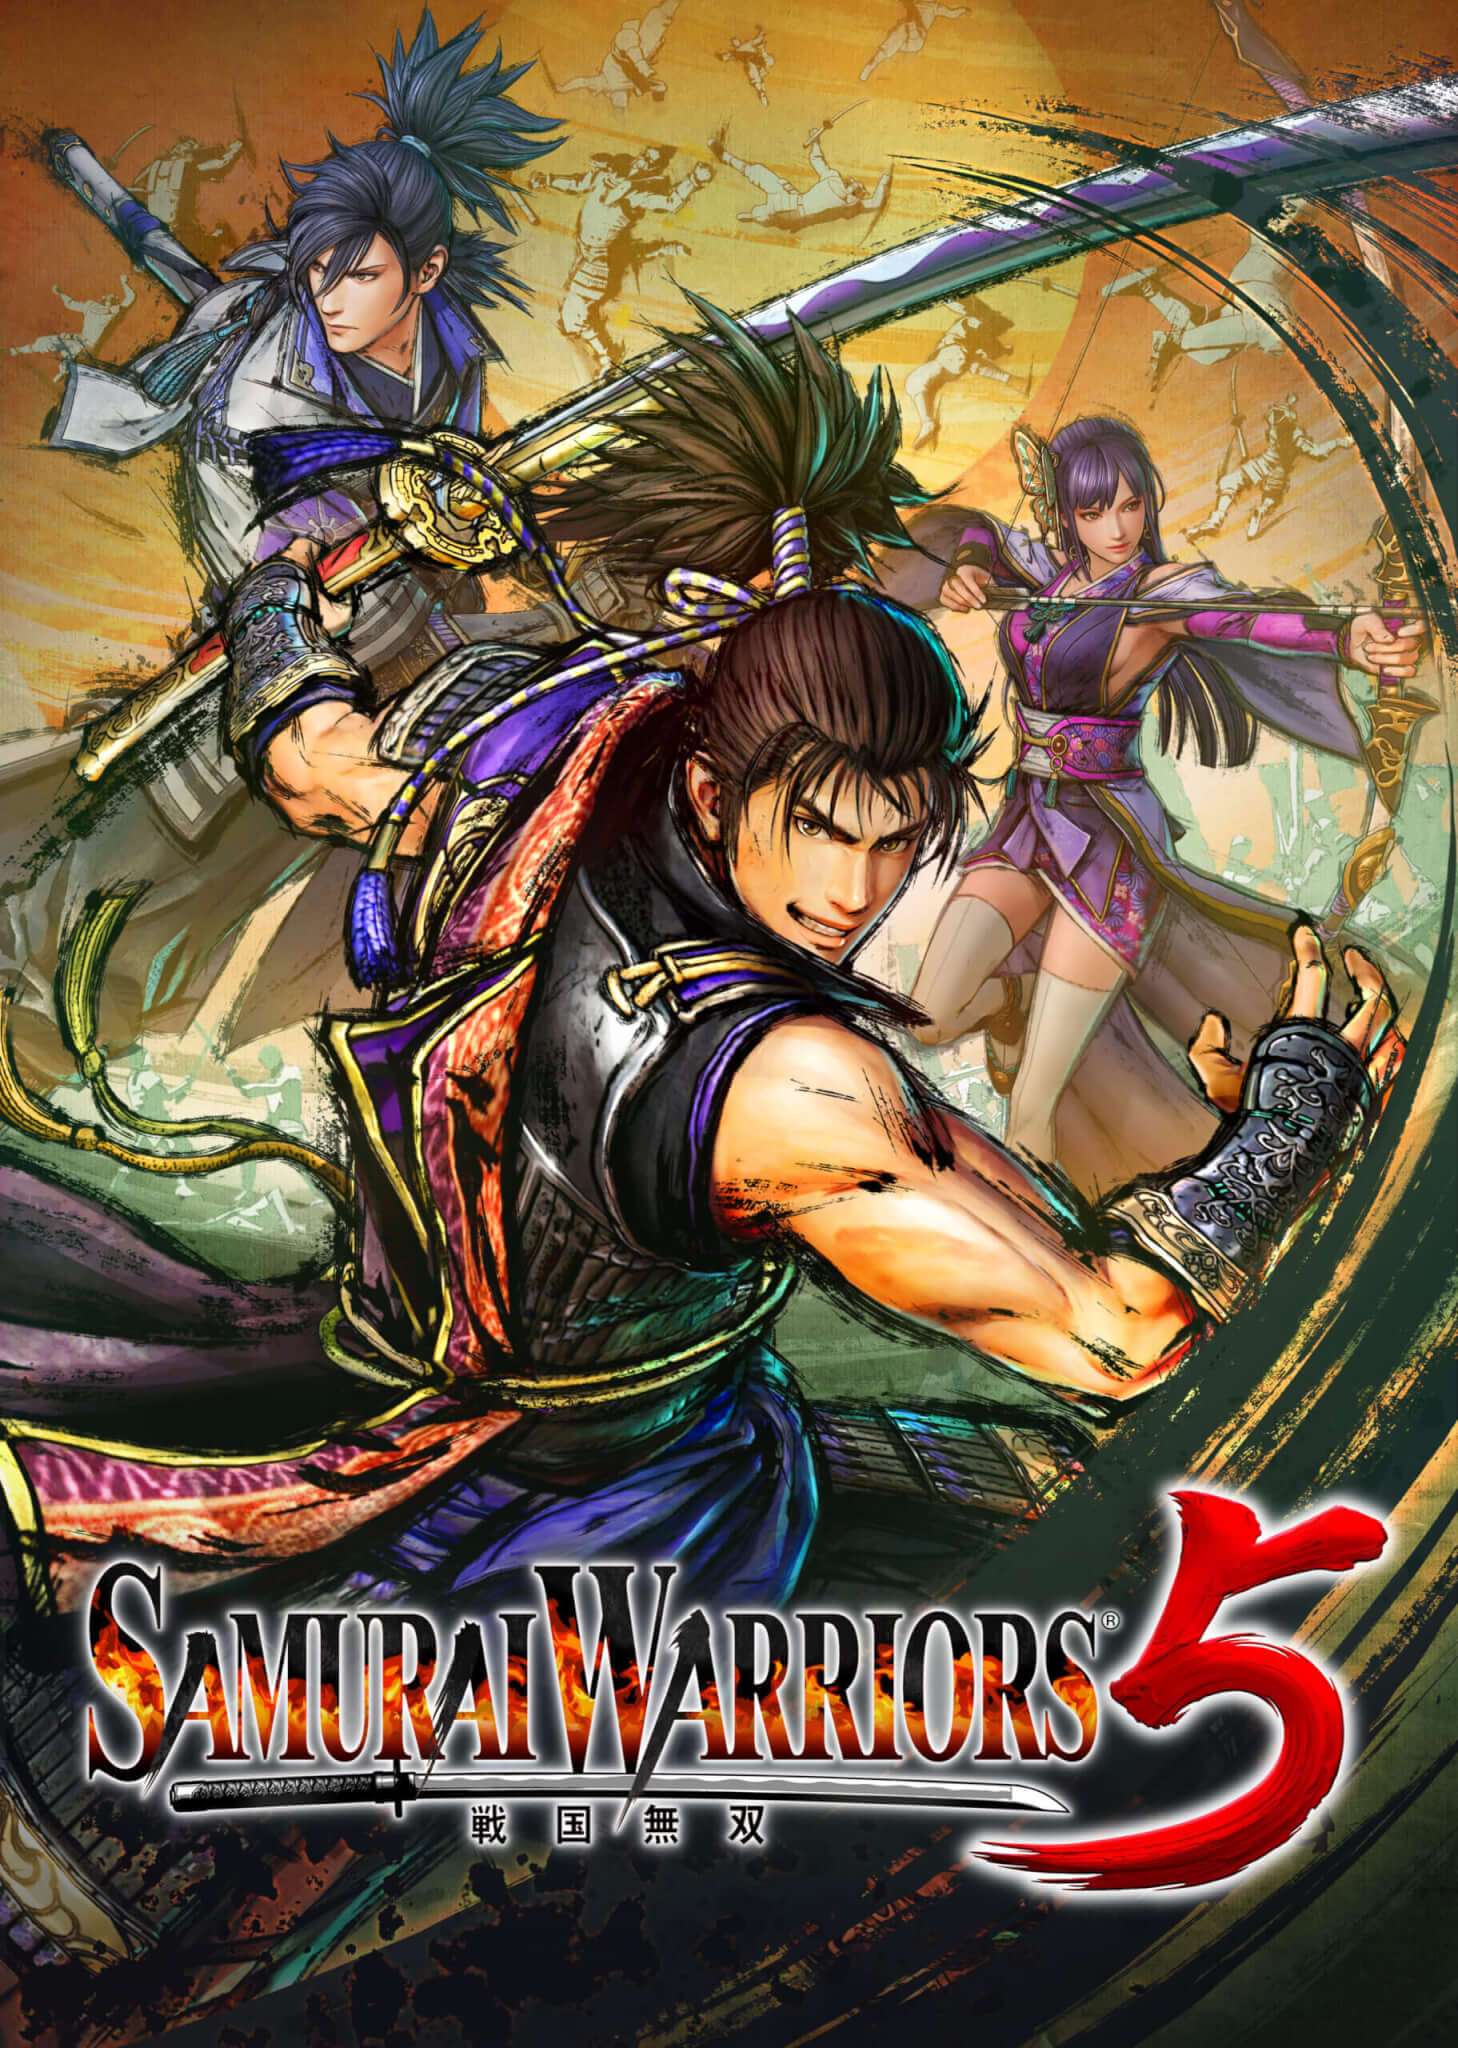 Samurai Warriors 5 anuncia Plataformas e Época de Lançamento